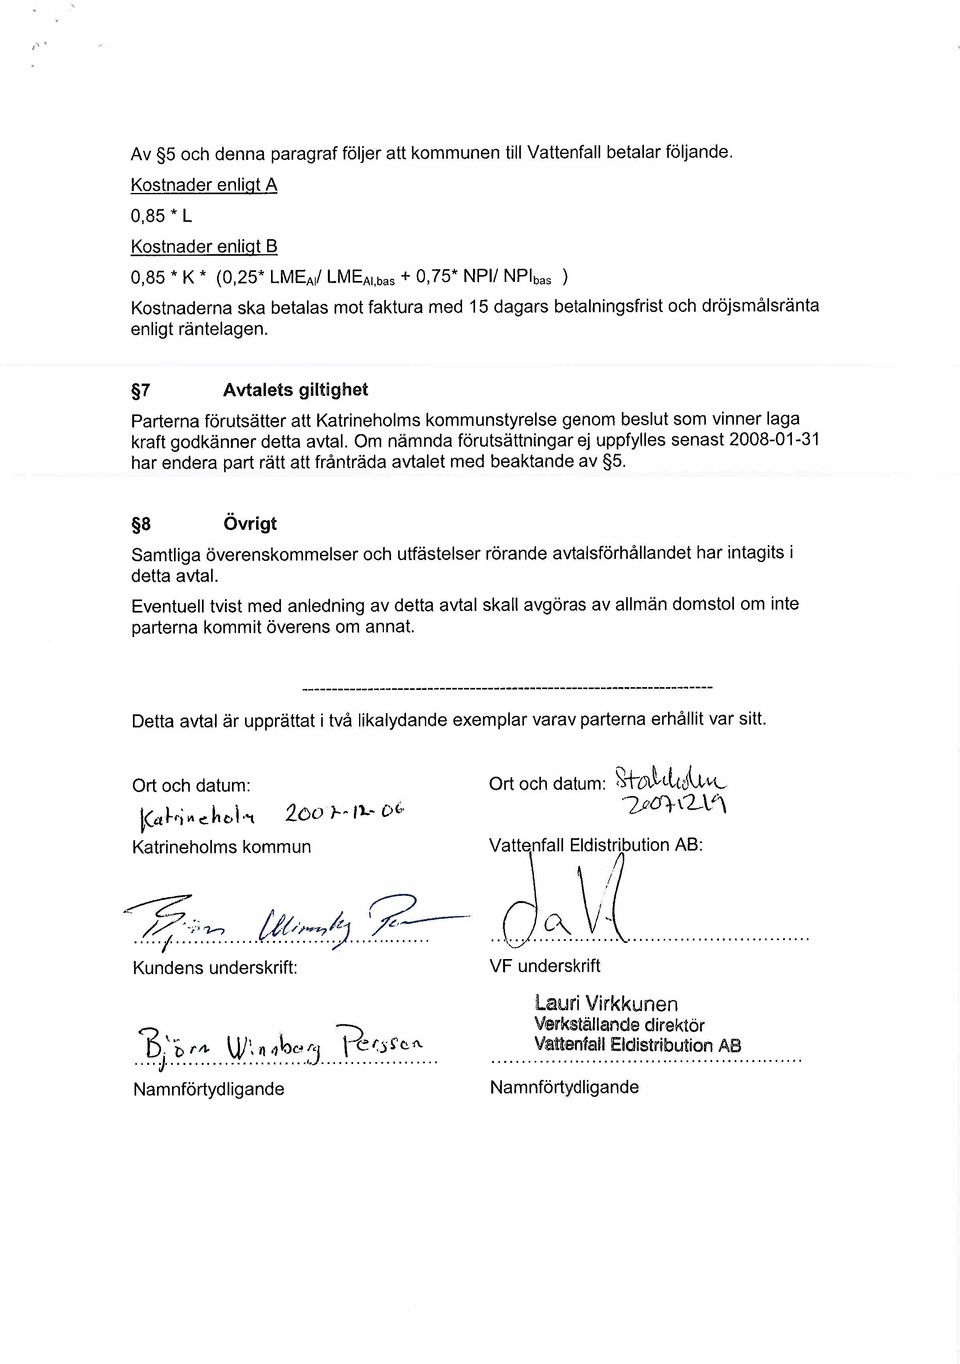 7 Avtalets gltghet Parterna förutsätter att Katrneholms kommunstyrelse genom beslut som vnner laga kraft godkänner detta avtal.